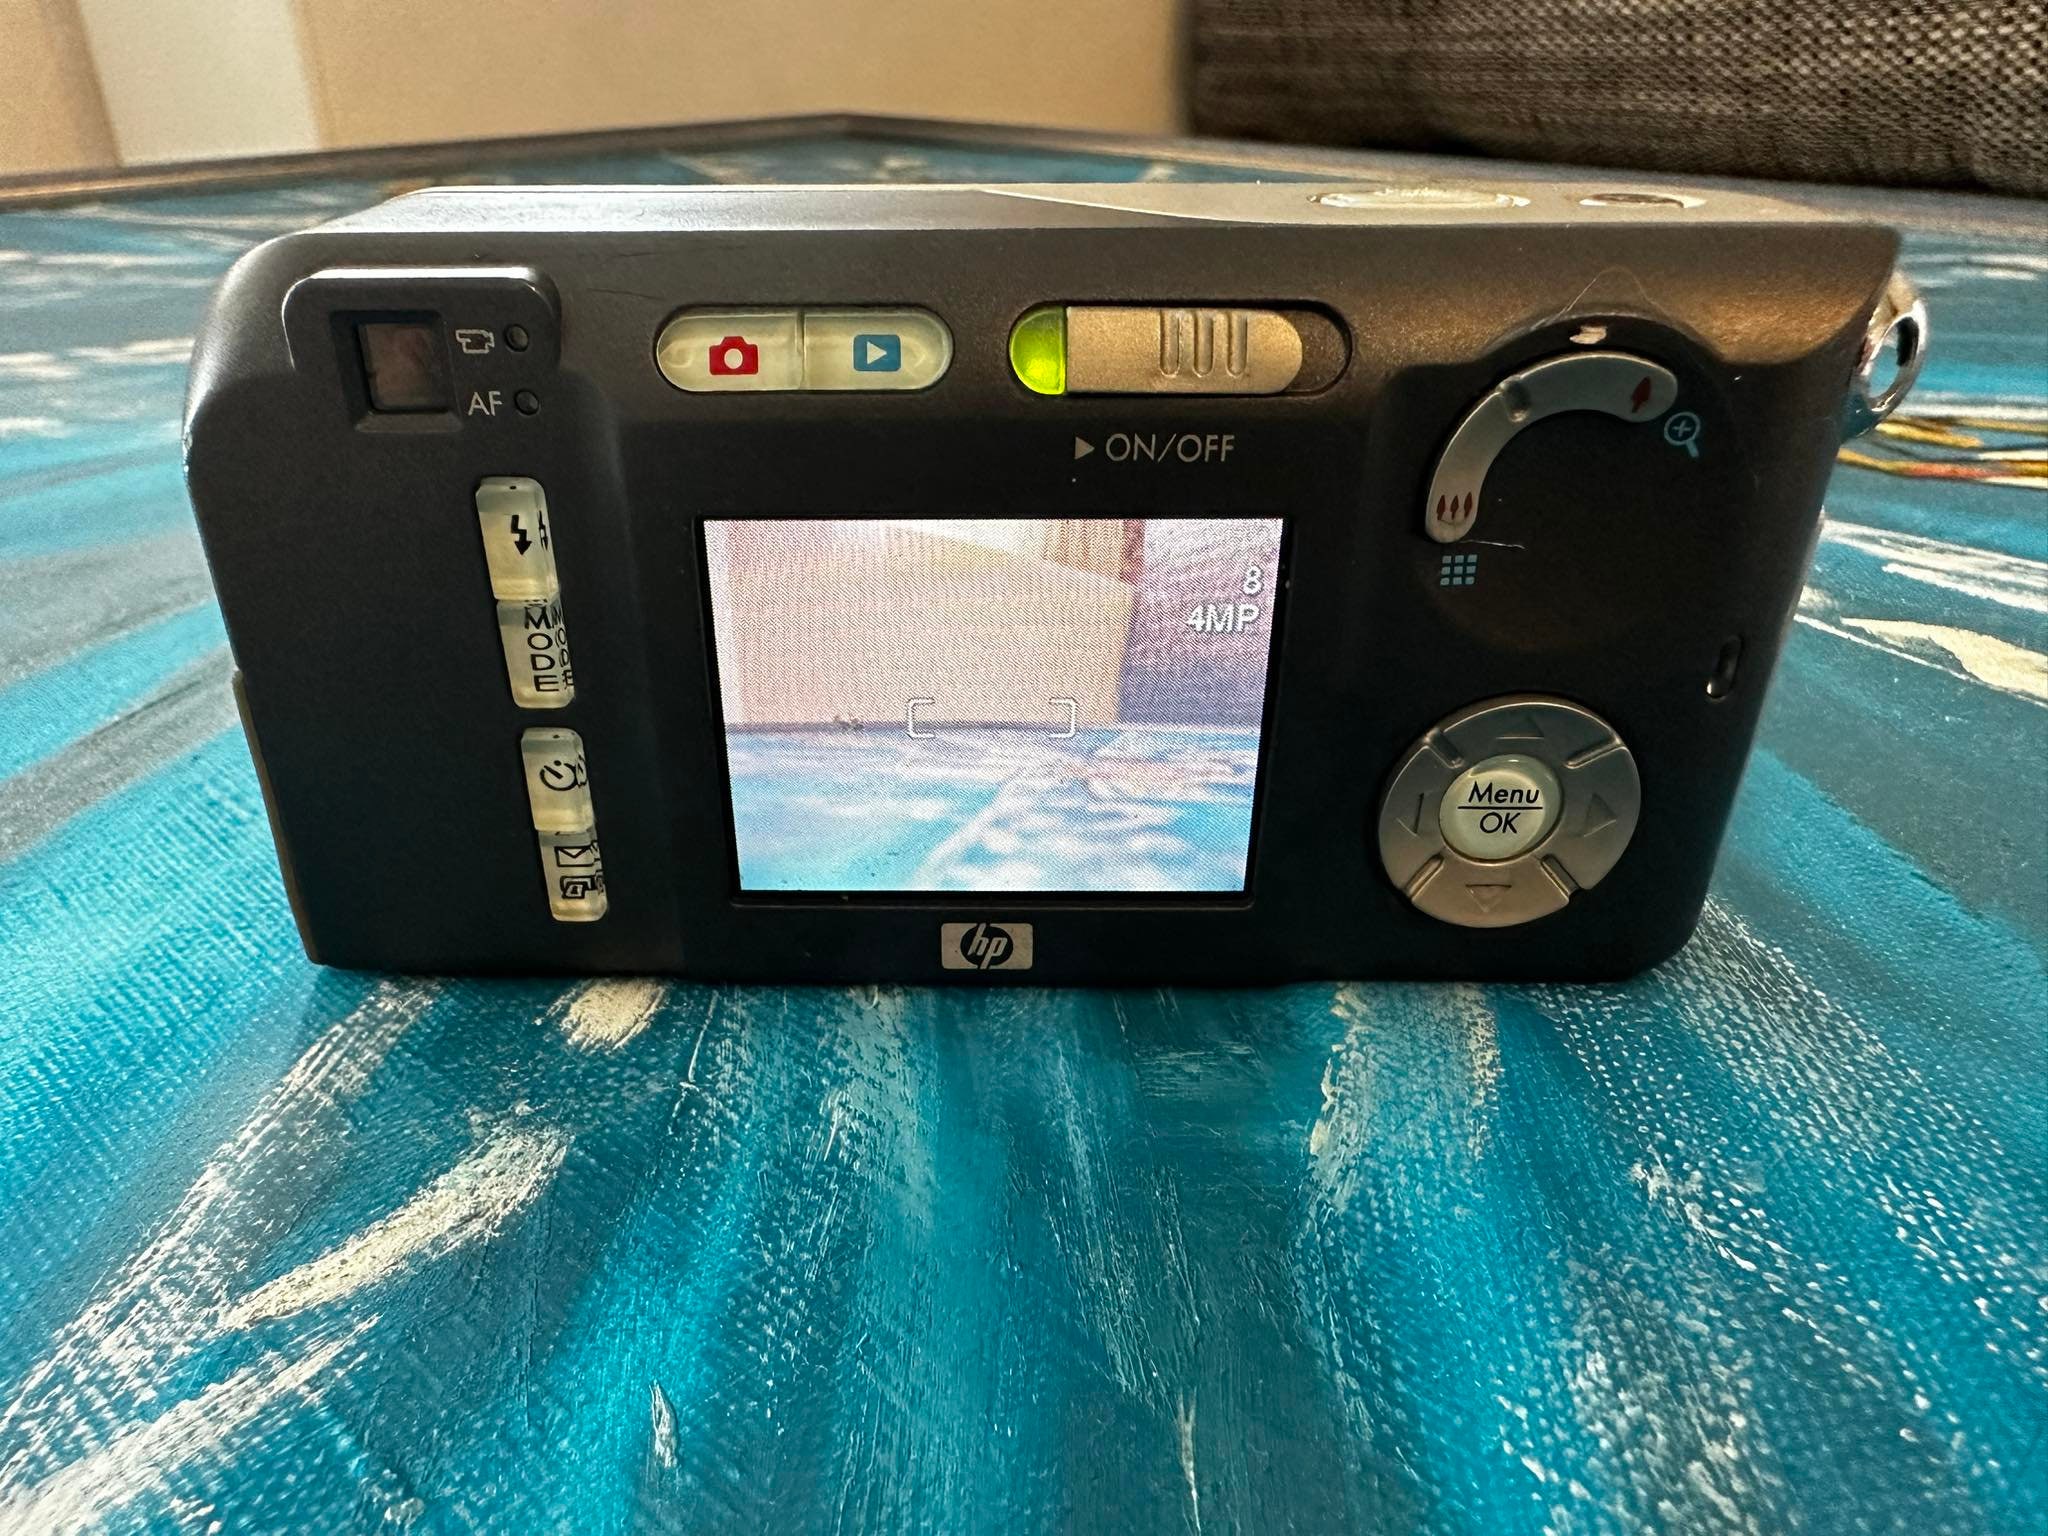 Accessoire appareil photo - caméra HPRT à prix doux sur Veepee